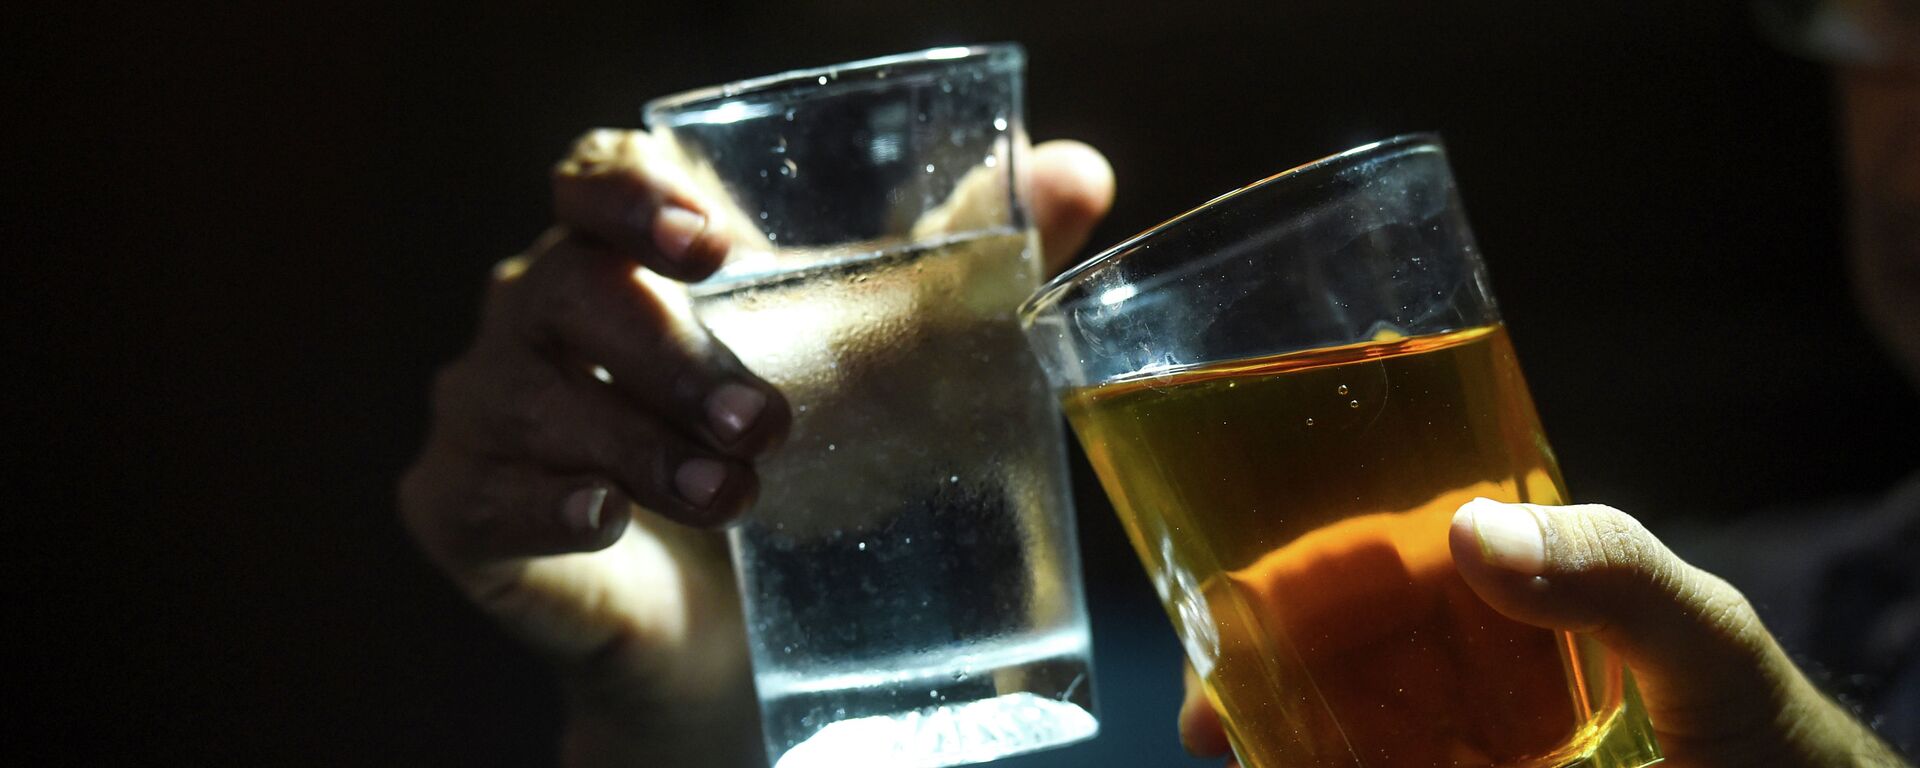 Мужчины распивают алкогольные напитки. Архивное фото - Sputnik Кыргызстан, 1920, 03.01.2021